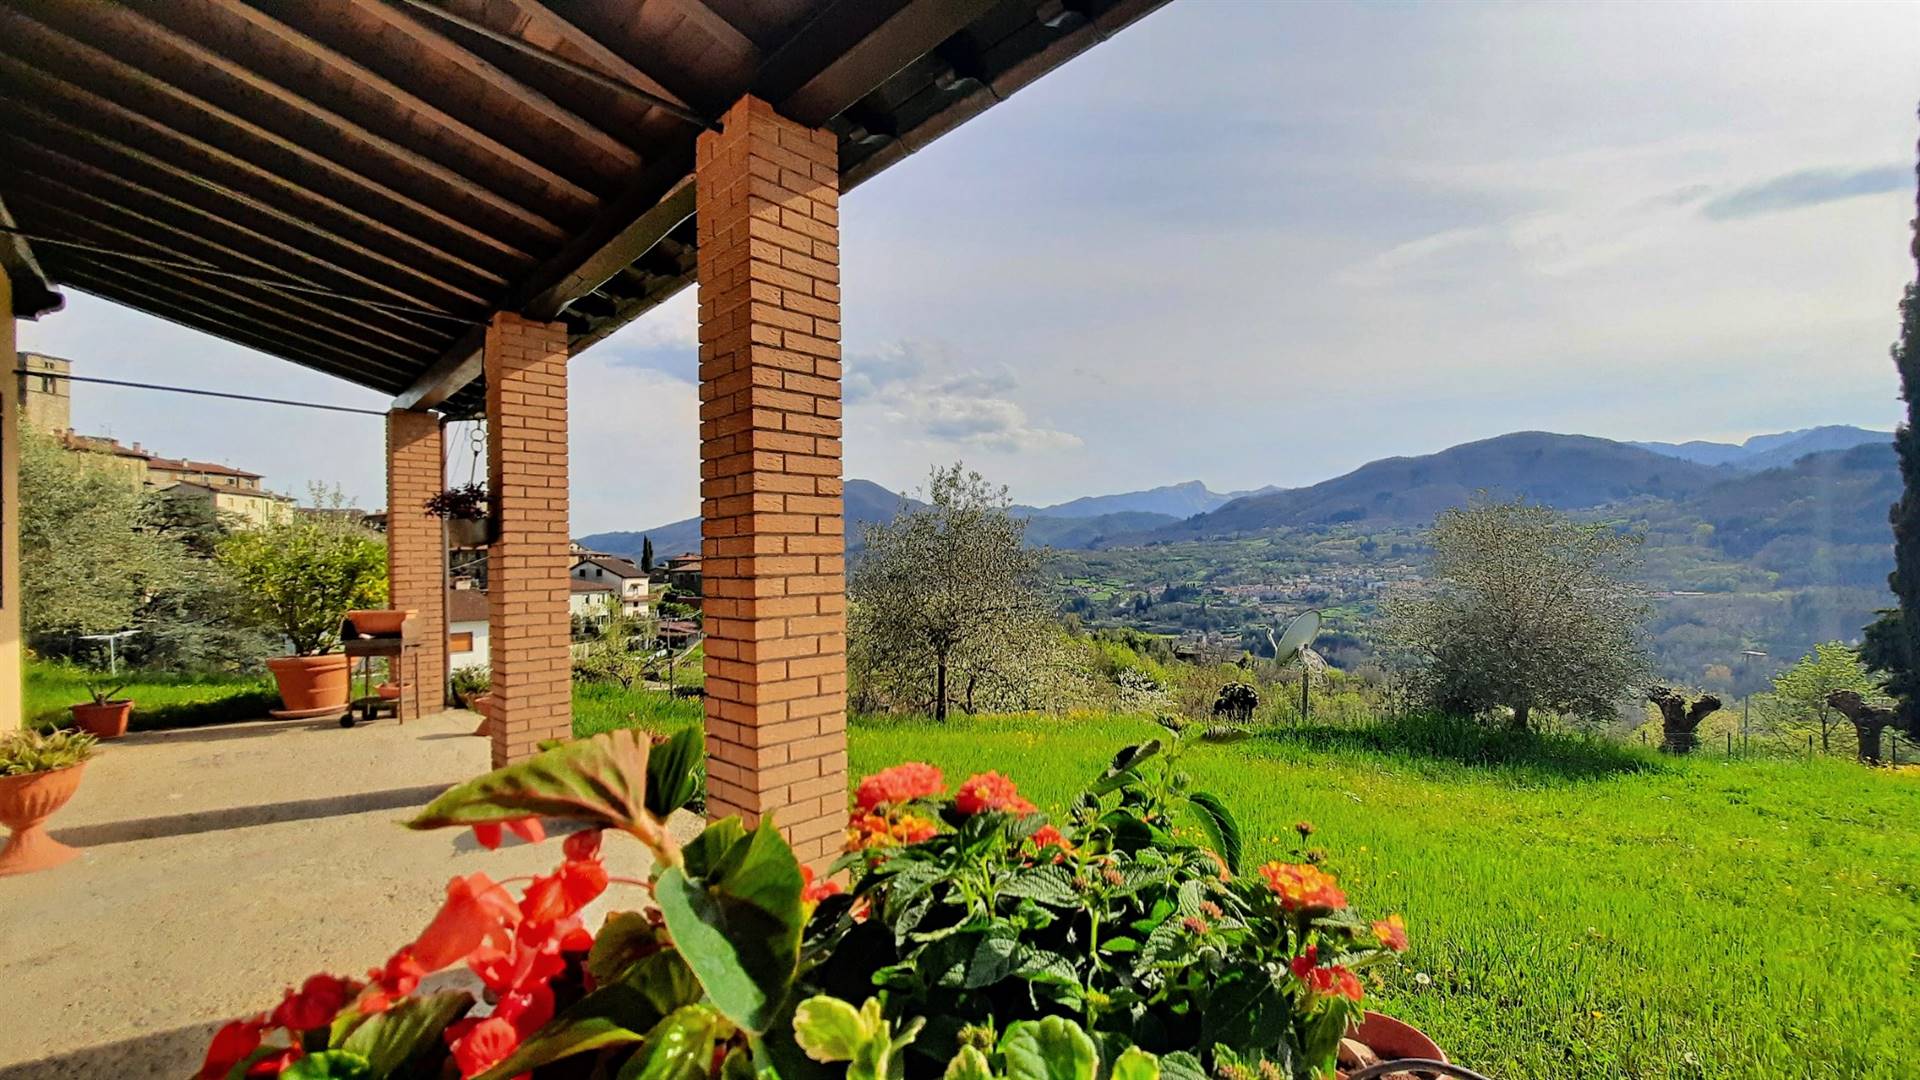 Vista dal portico - View from the porch